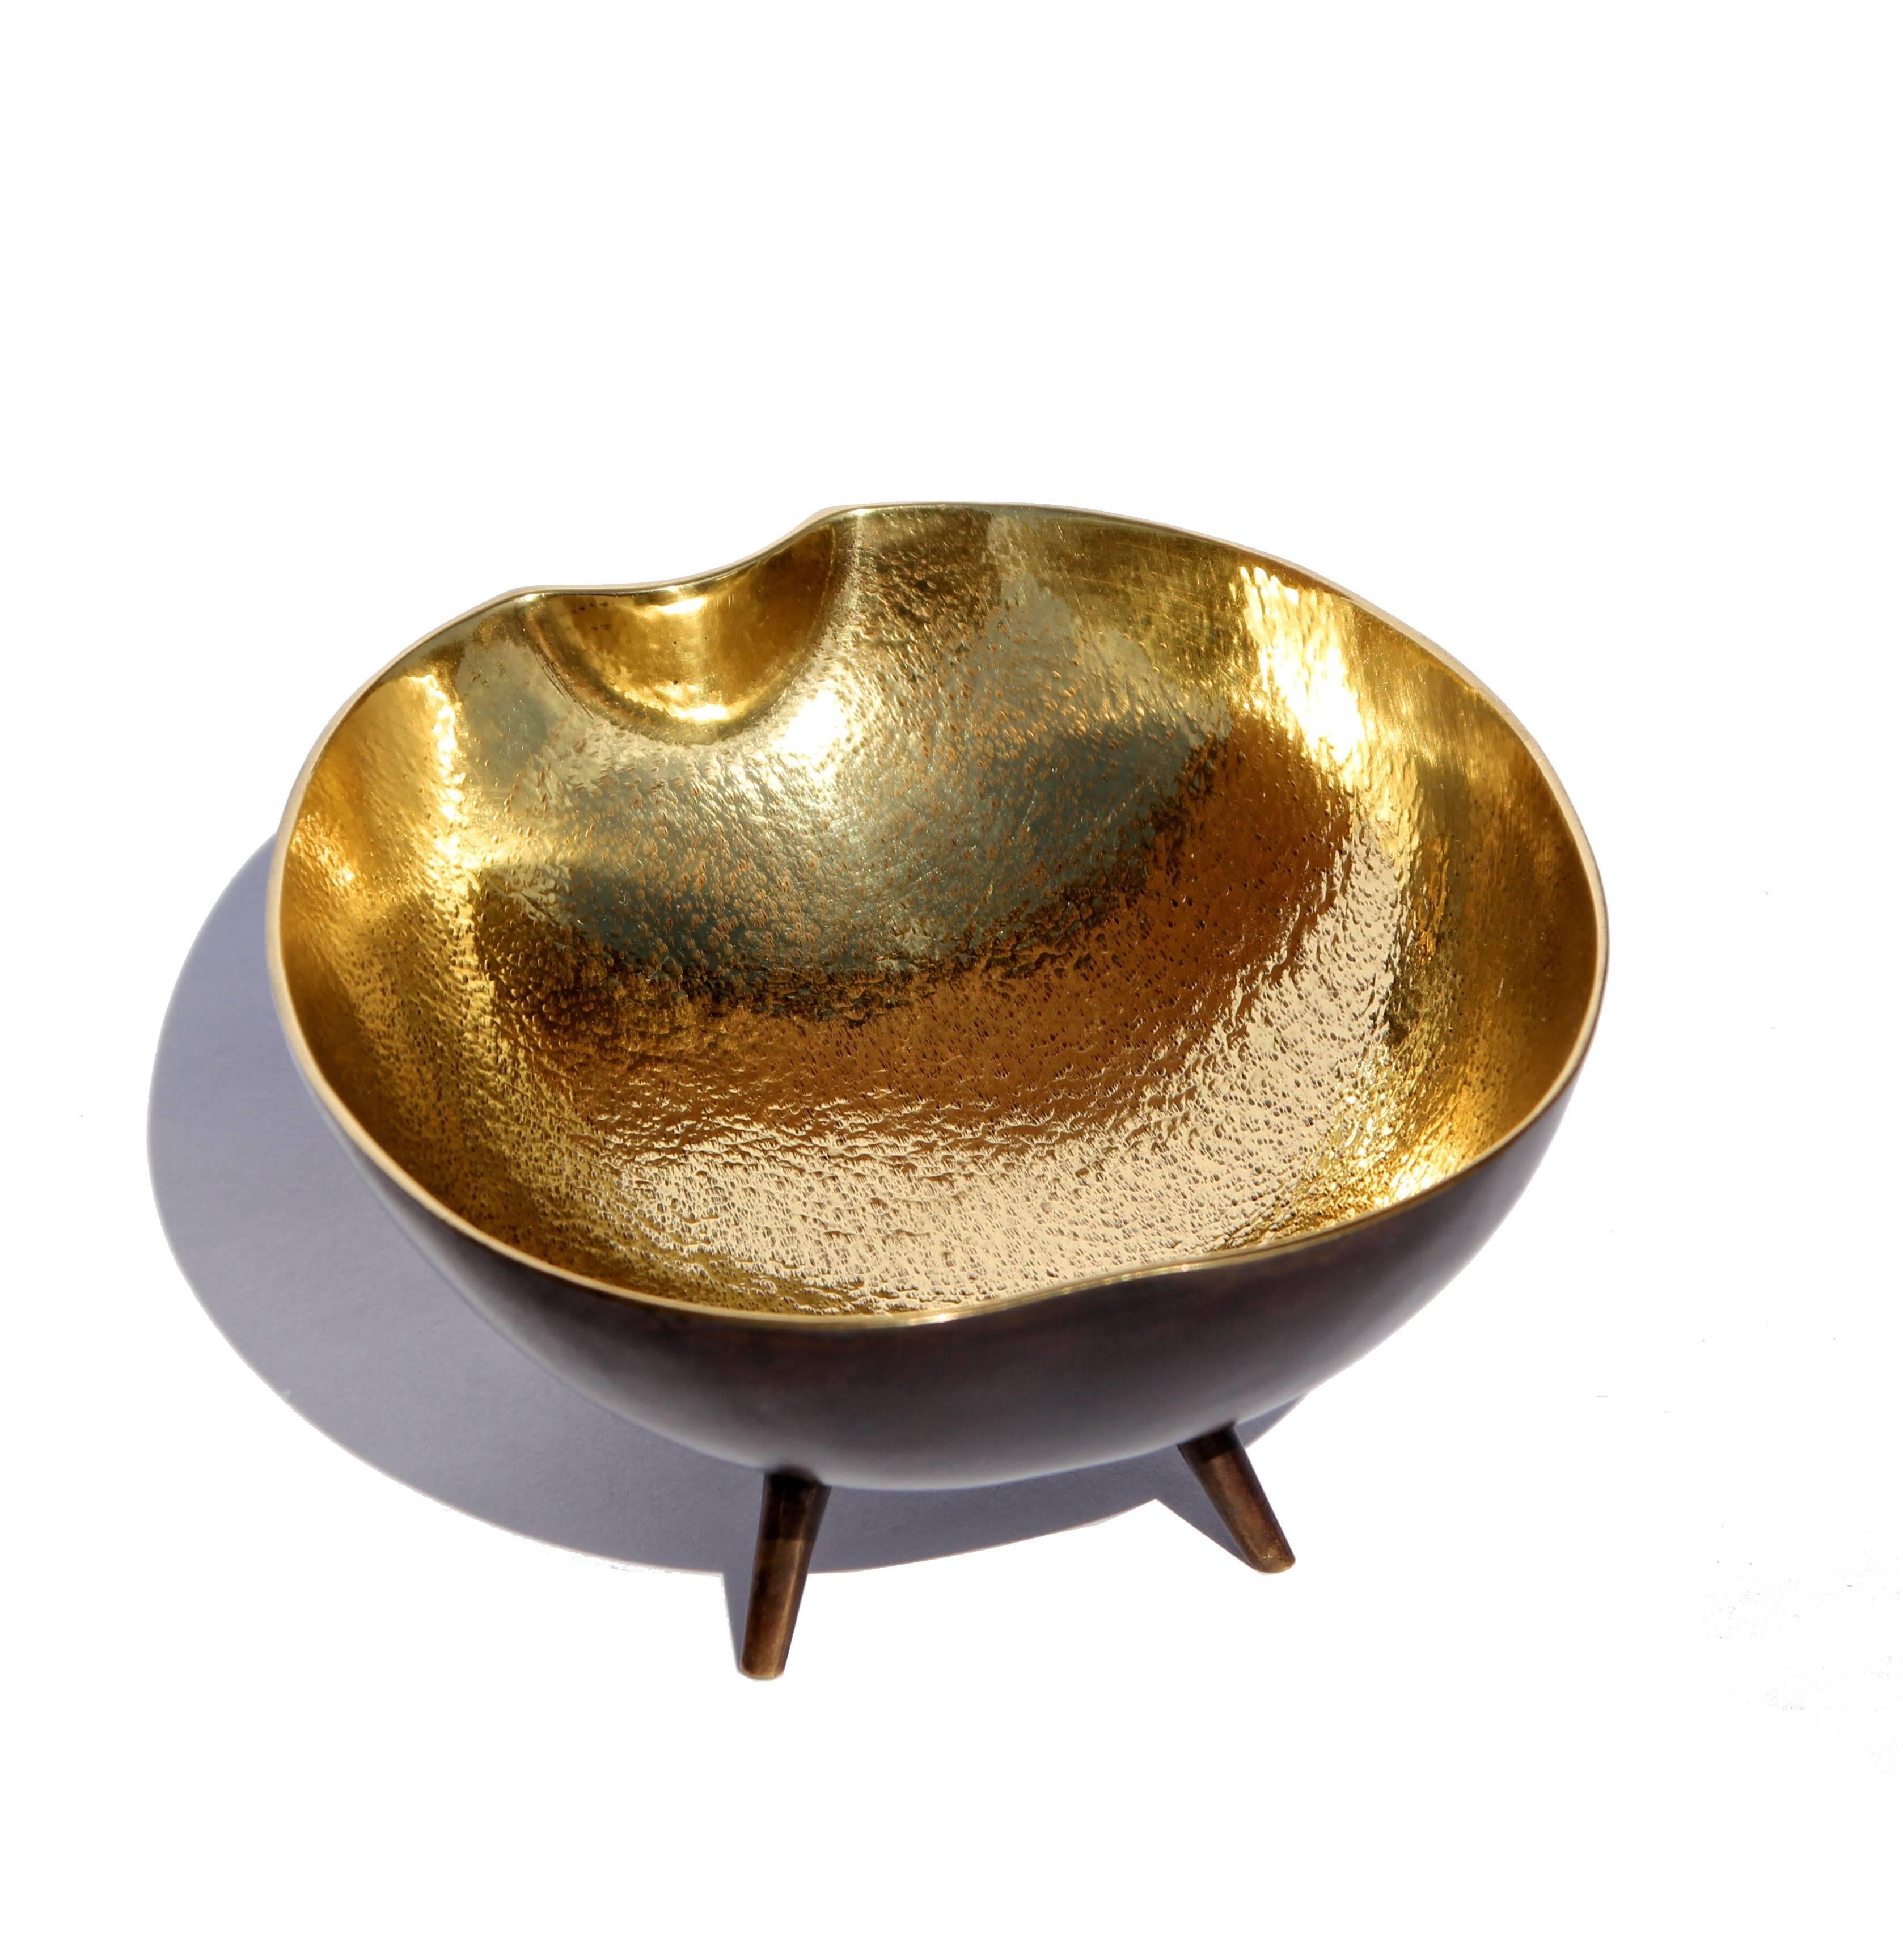 Cast Brass Bowl with Legs (Organische Moderne)